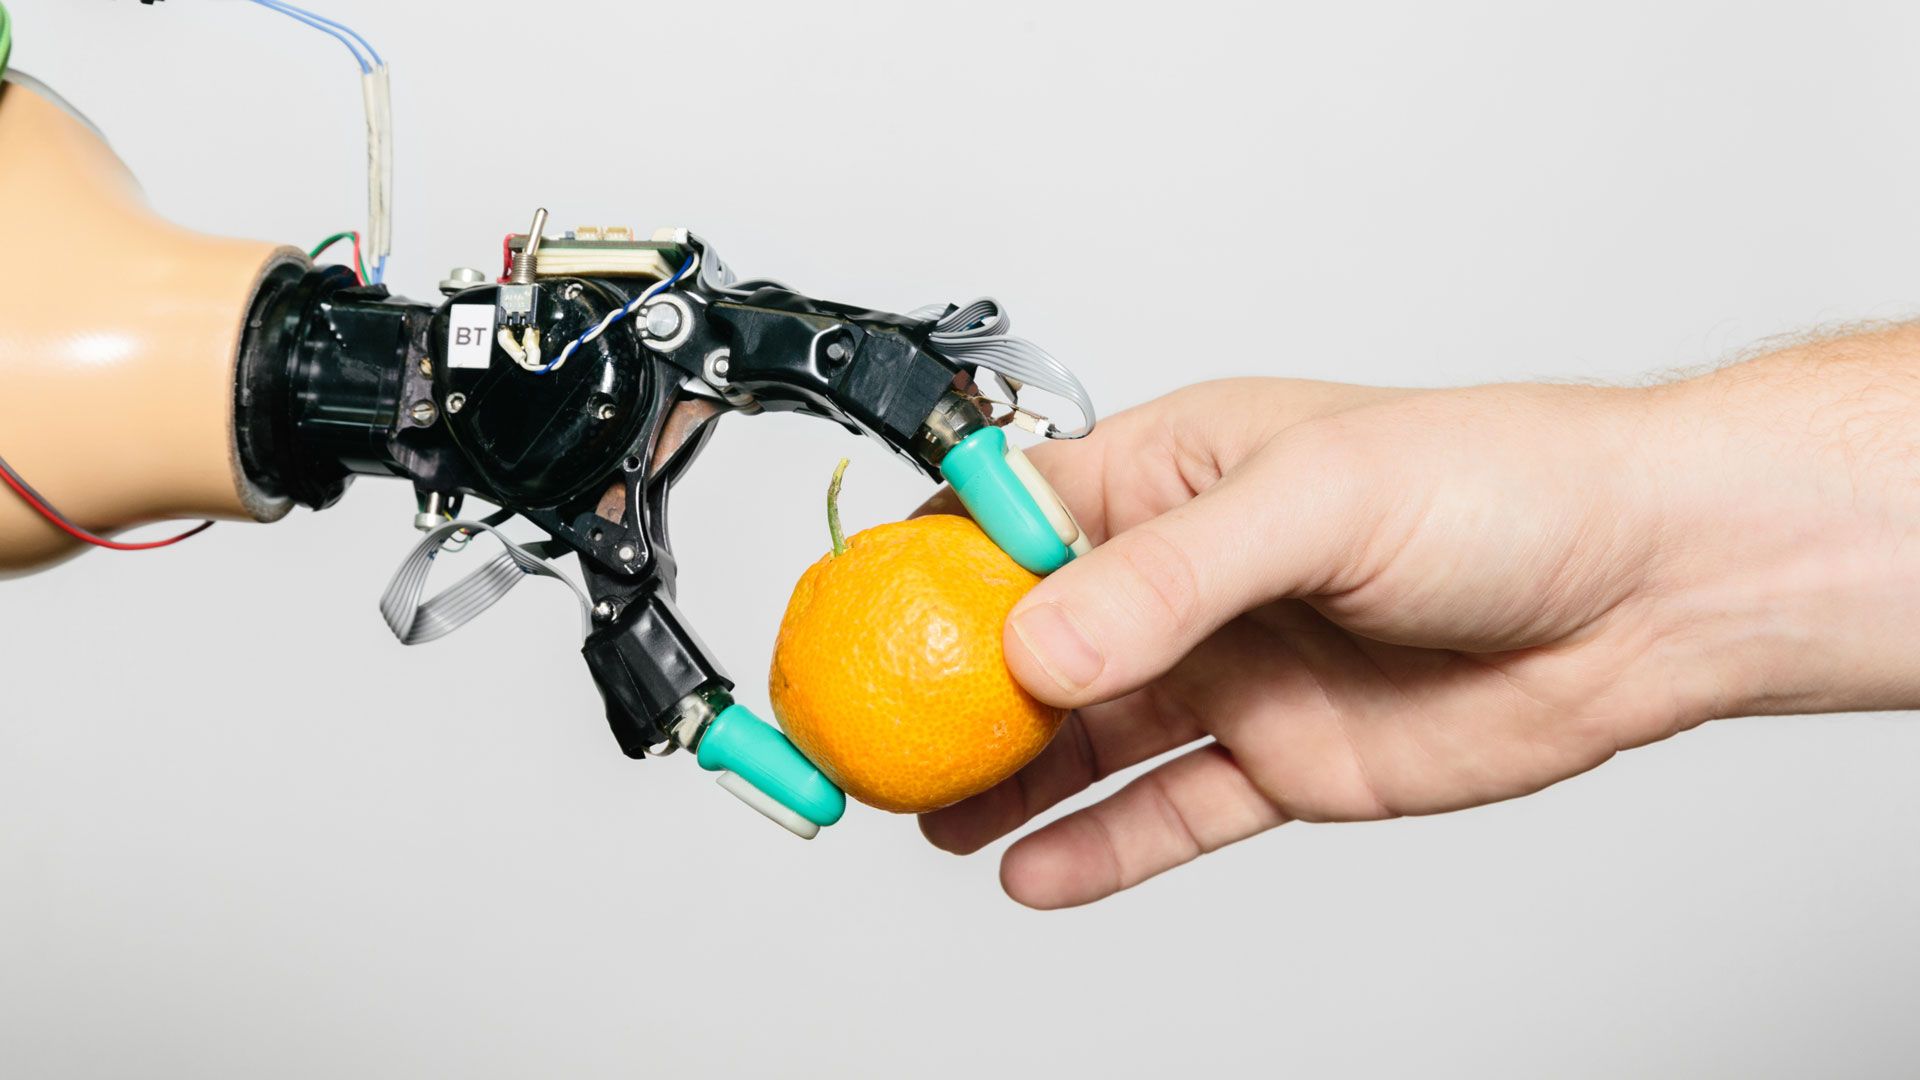 機器人手從人類手中拿走橘子